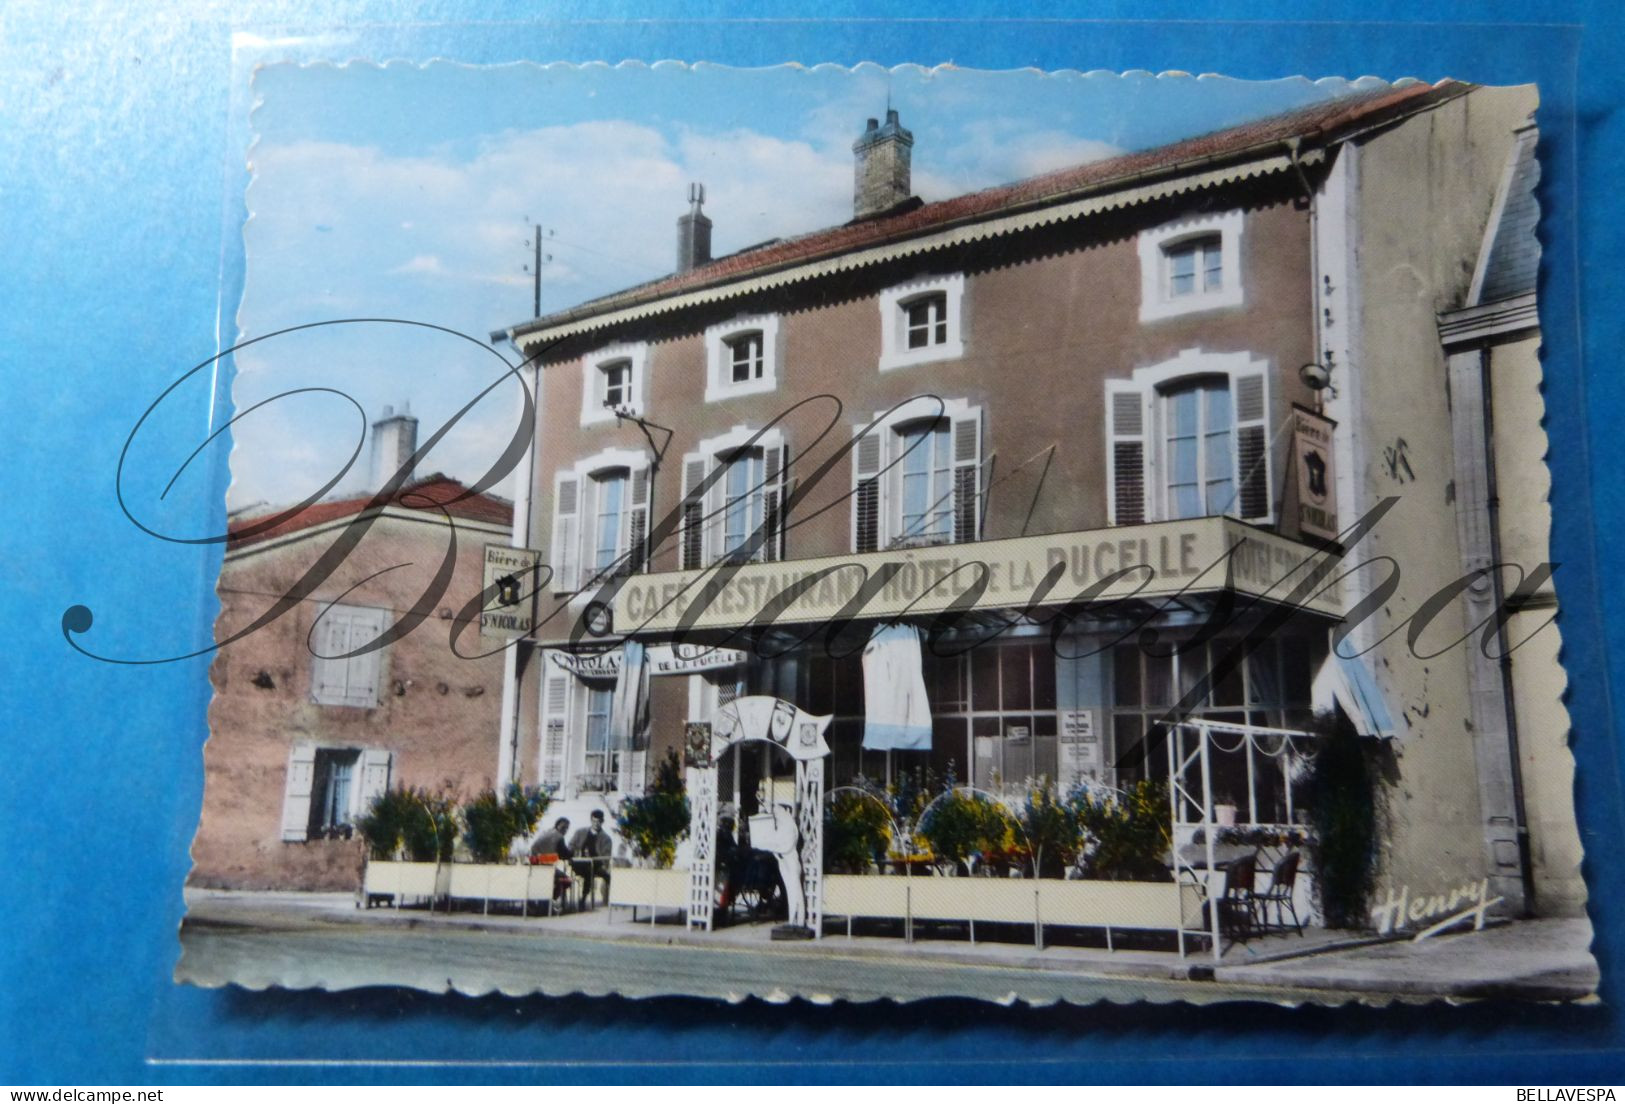 Domremy Hotel Cafe De La Pucelle  D88 Bierre De St Nicolas - Domremy La Pucelle